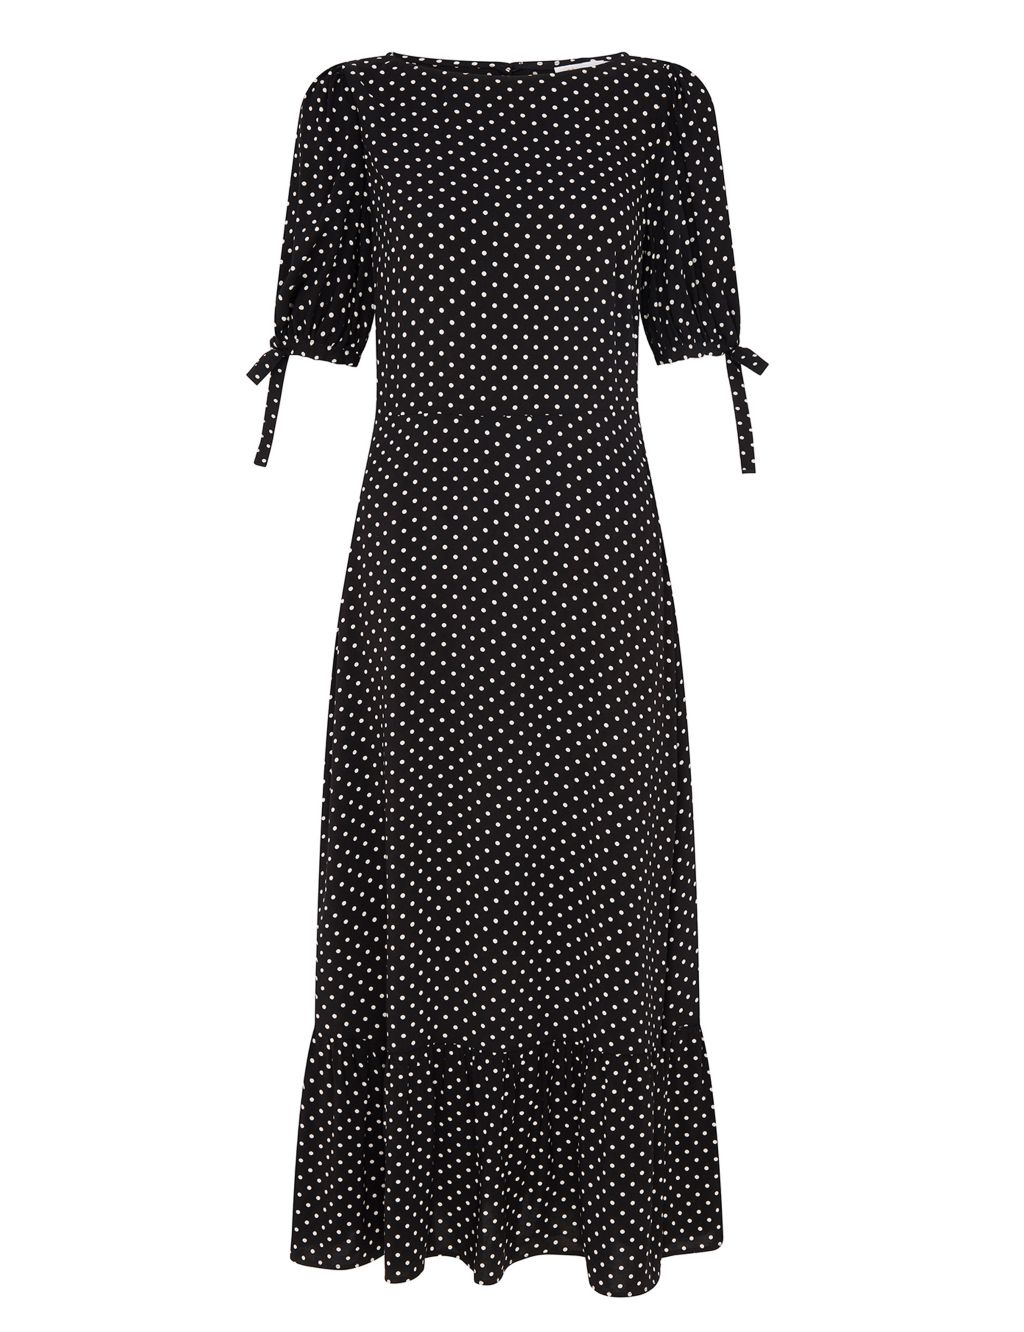 Polka Dot Tie Sleeve Midi Tea Dress image 2